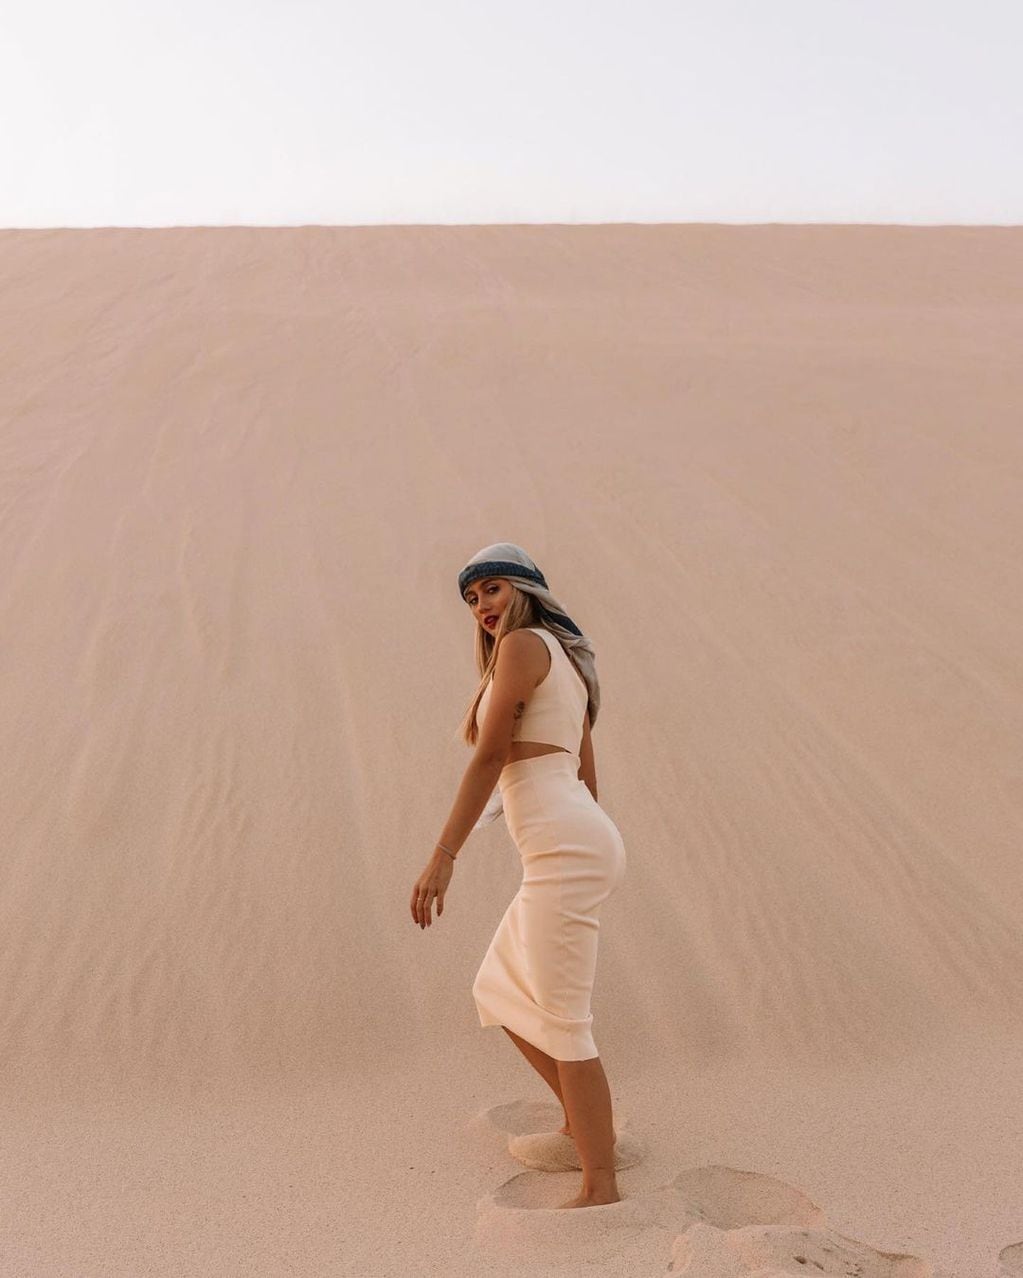 Morena Beltrán posó en el desierto de Doha, Qatar